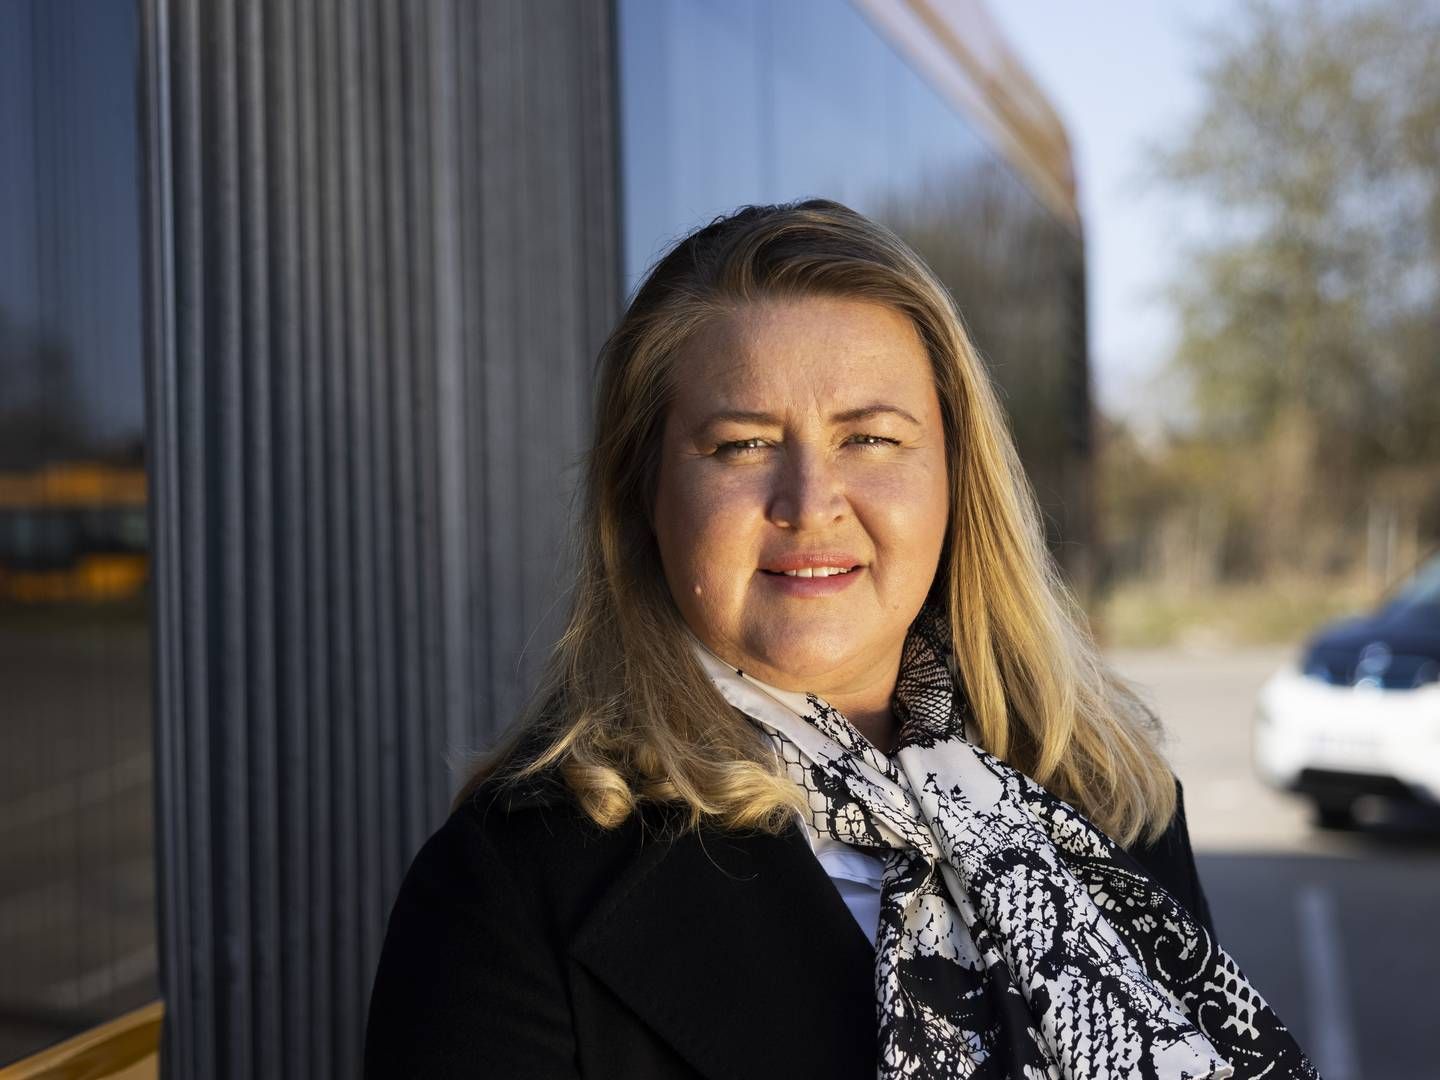 Adm. direktør i Arriva Danmark, Marianne Bøttger, vil ikke udtale sig om selskabets salgsproces eller nyt regnskab. | Foto: Gregers Tycho/ERH